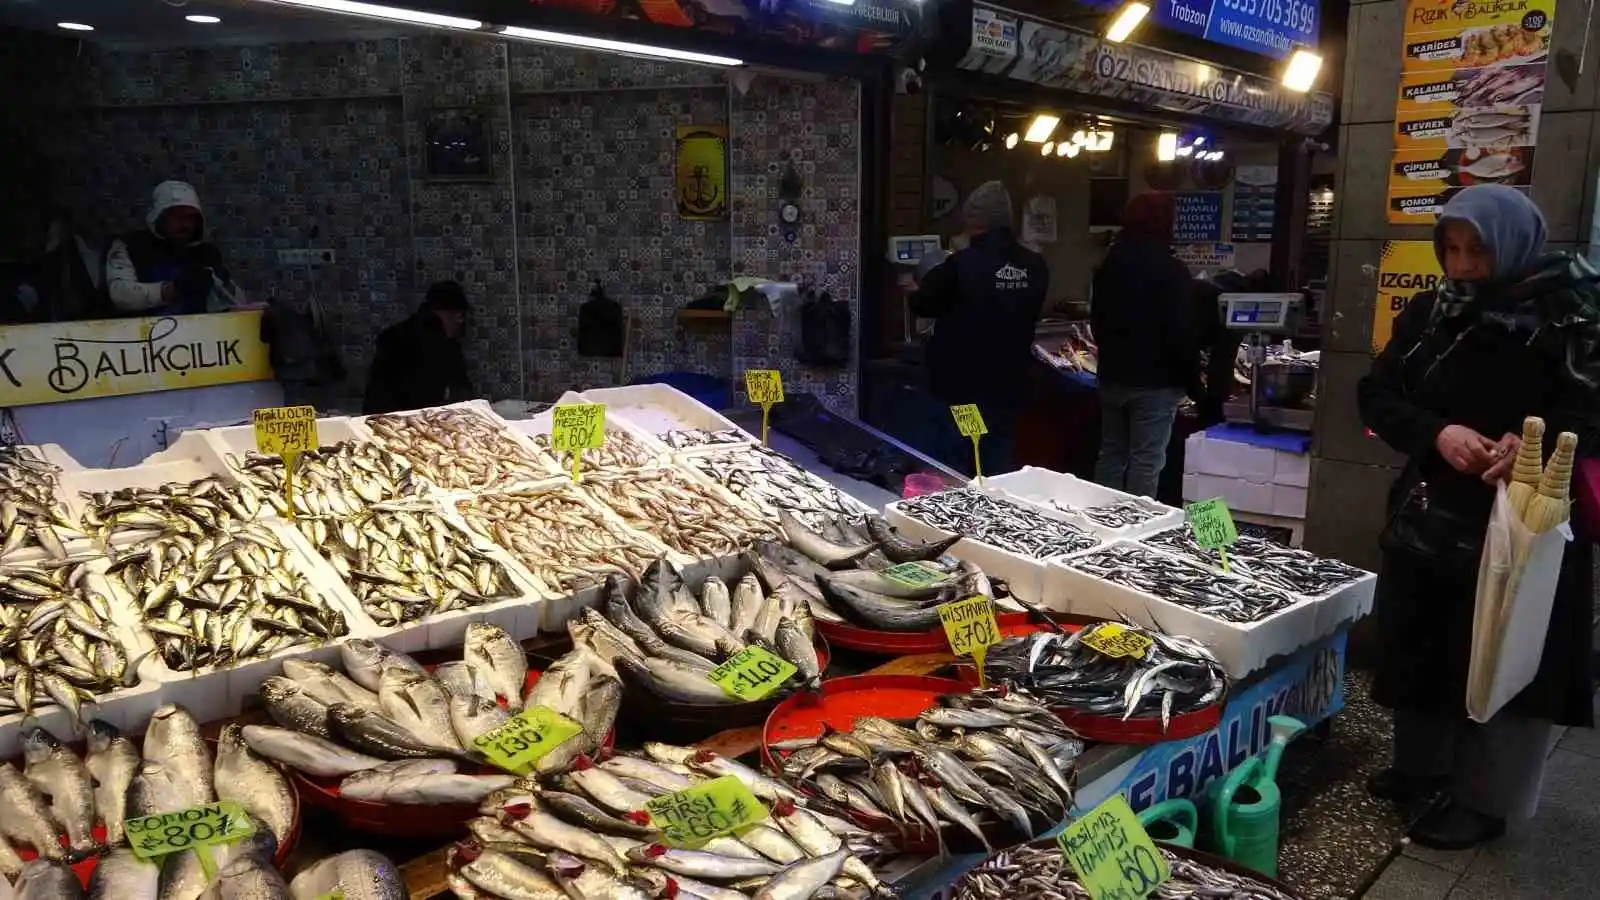 Trabzon'da balık av sezonu sonuna doğru tezgahlarda çeşit bolluğu
